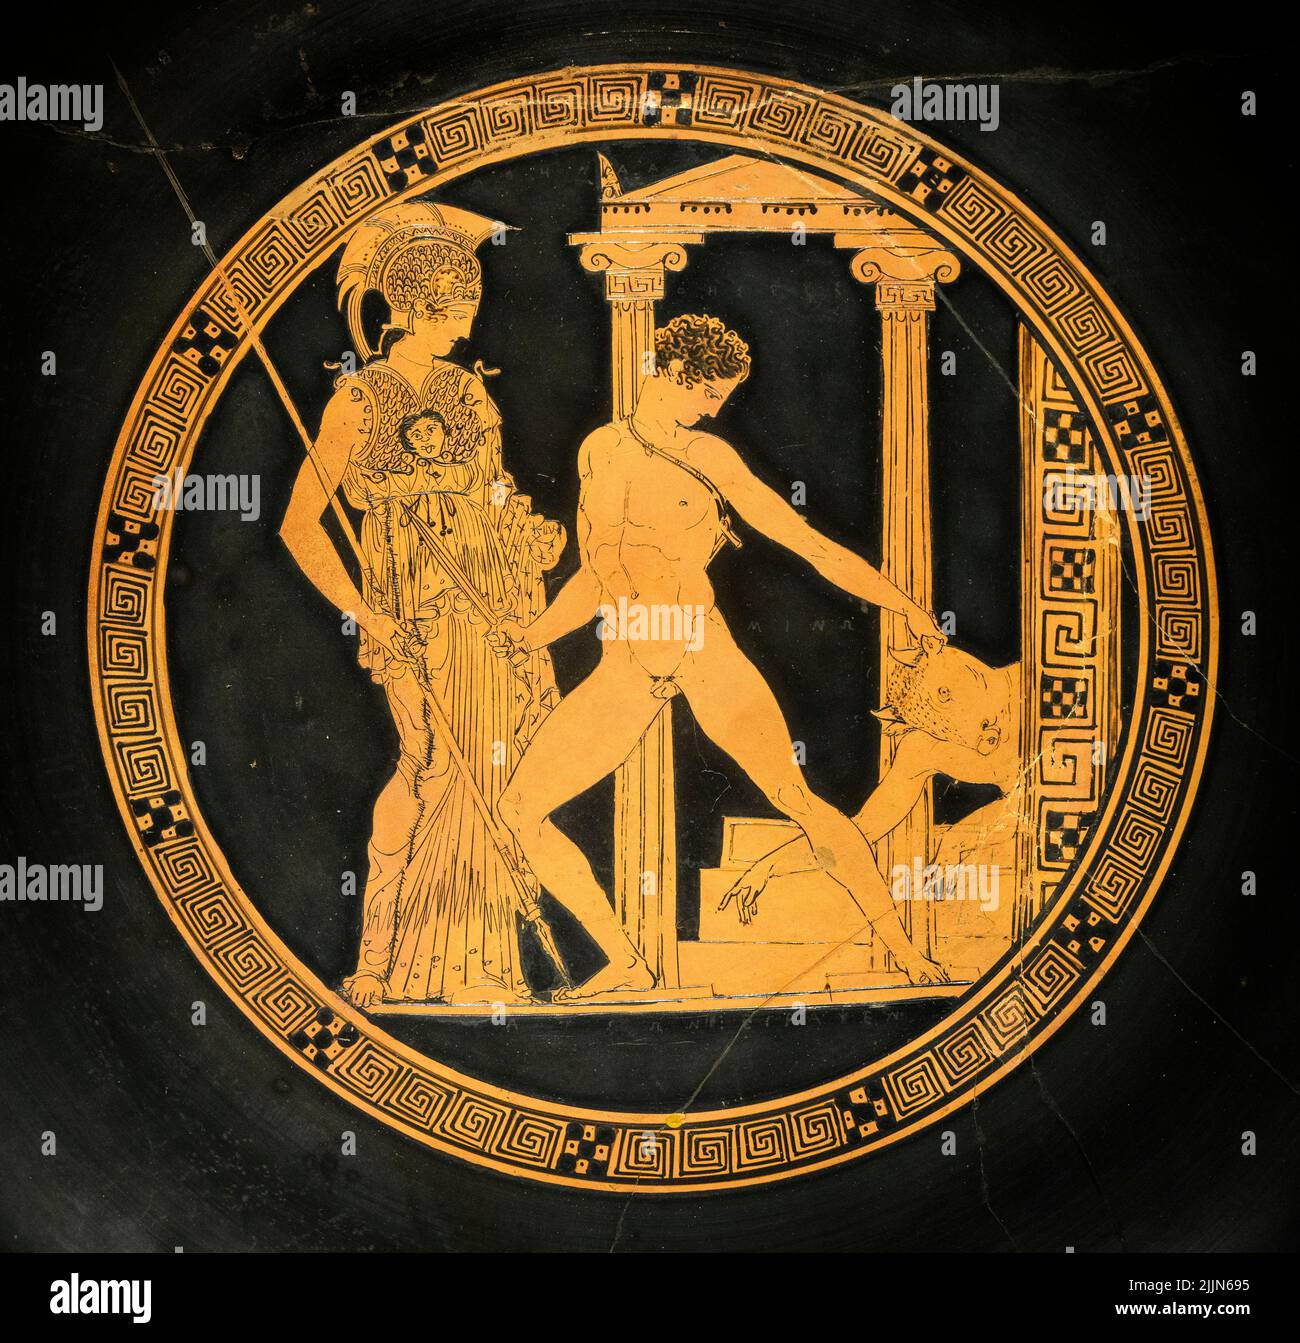 Un greco Kylix (coppa del vino) decorato dal pittore aison circa 420 - 410 a.C. mostrando Theseus trascinando il morto, toro-testa Minotaur dalle porte o Foto Stock